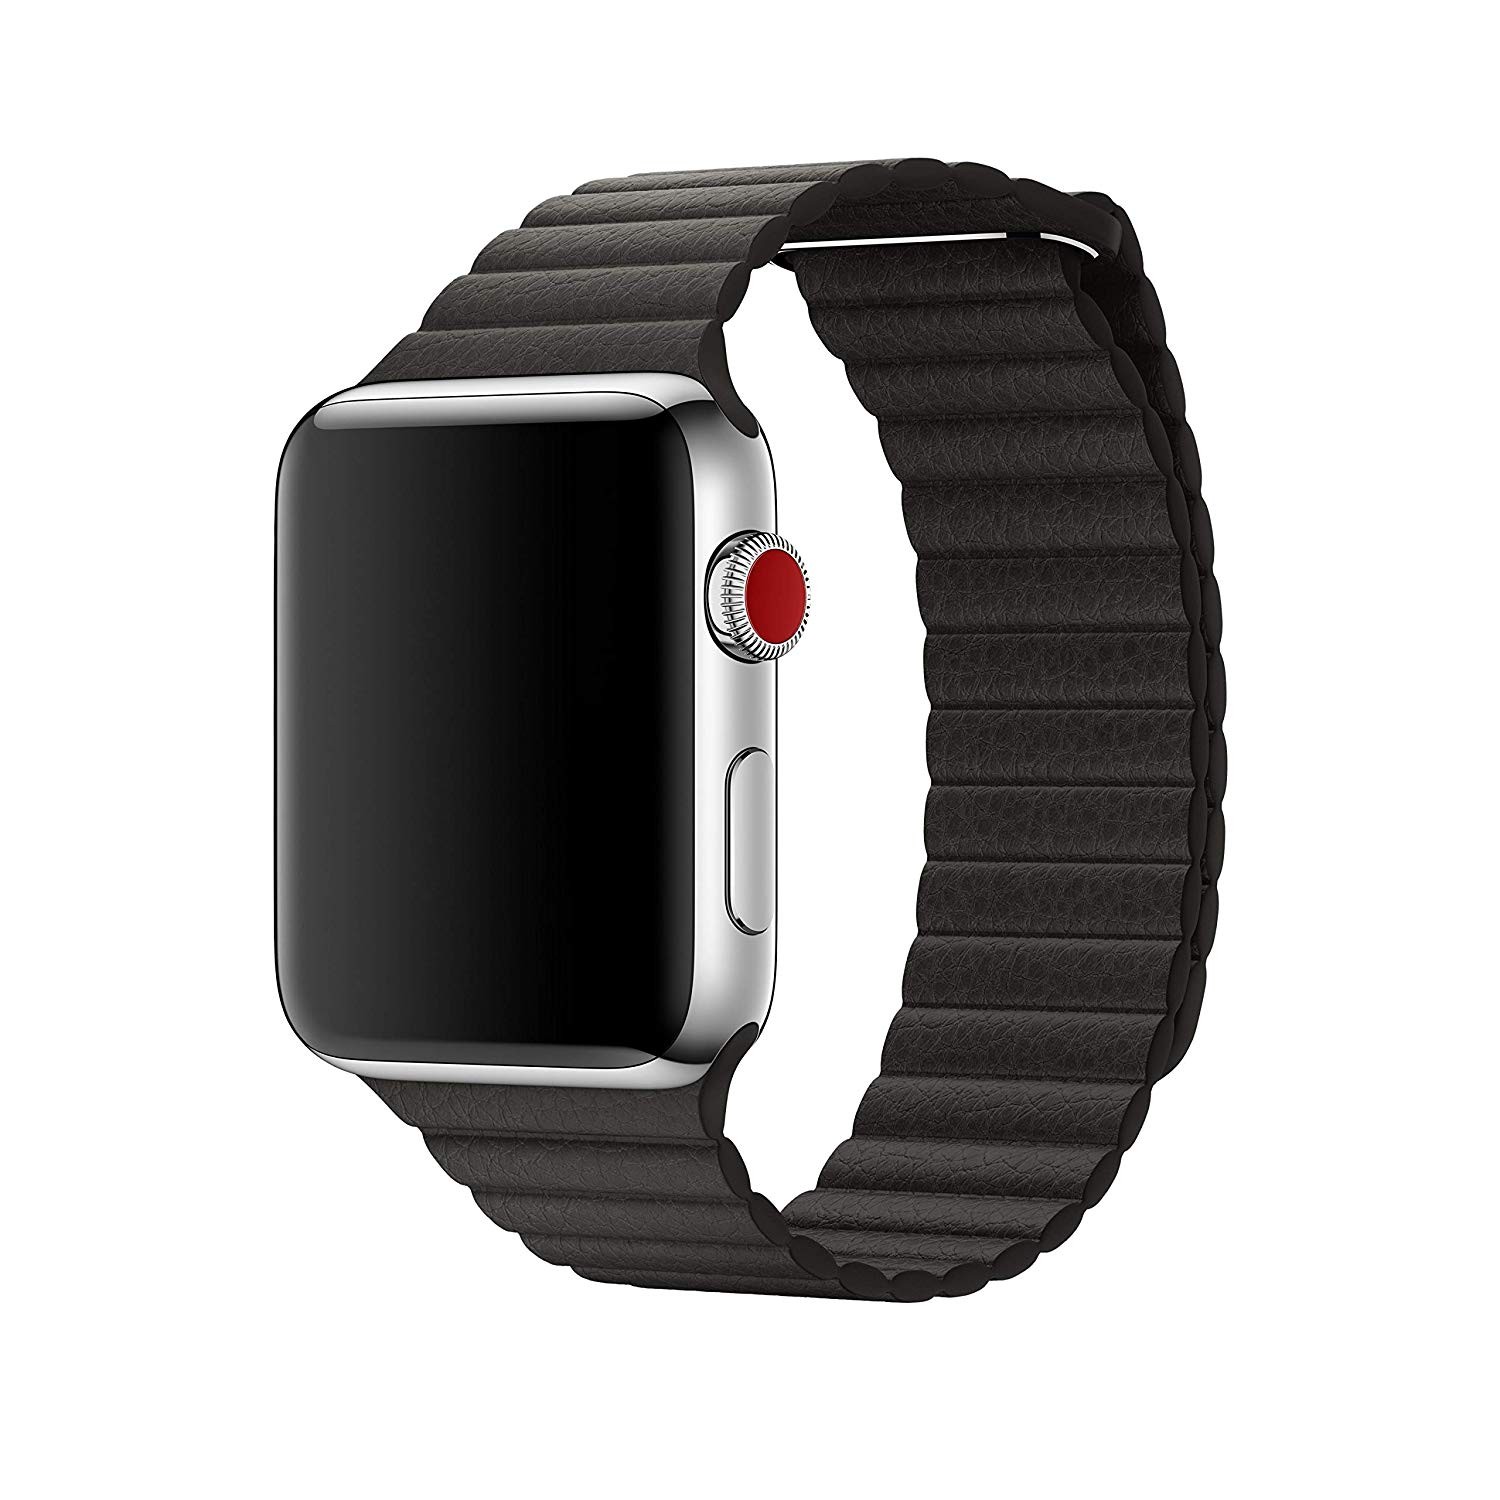 Ремешки для apple watch ultra 2. Ремешок Apple 44mm. Кожаный ремешок для Apple watch 44mm. Ремешок для Apple watch 42/44. Ремешок для часов Аппле вотч 44мм.